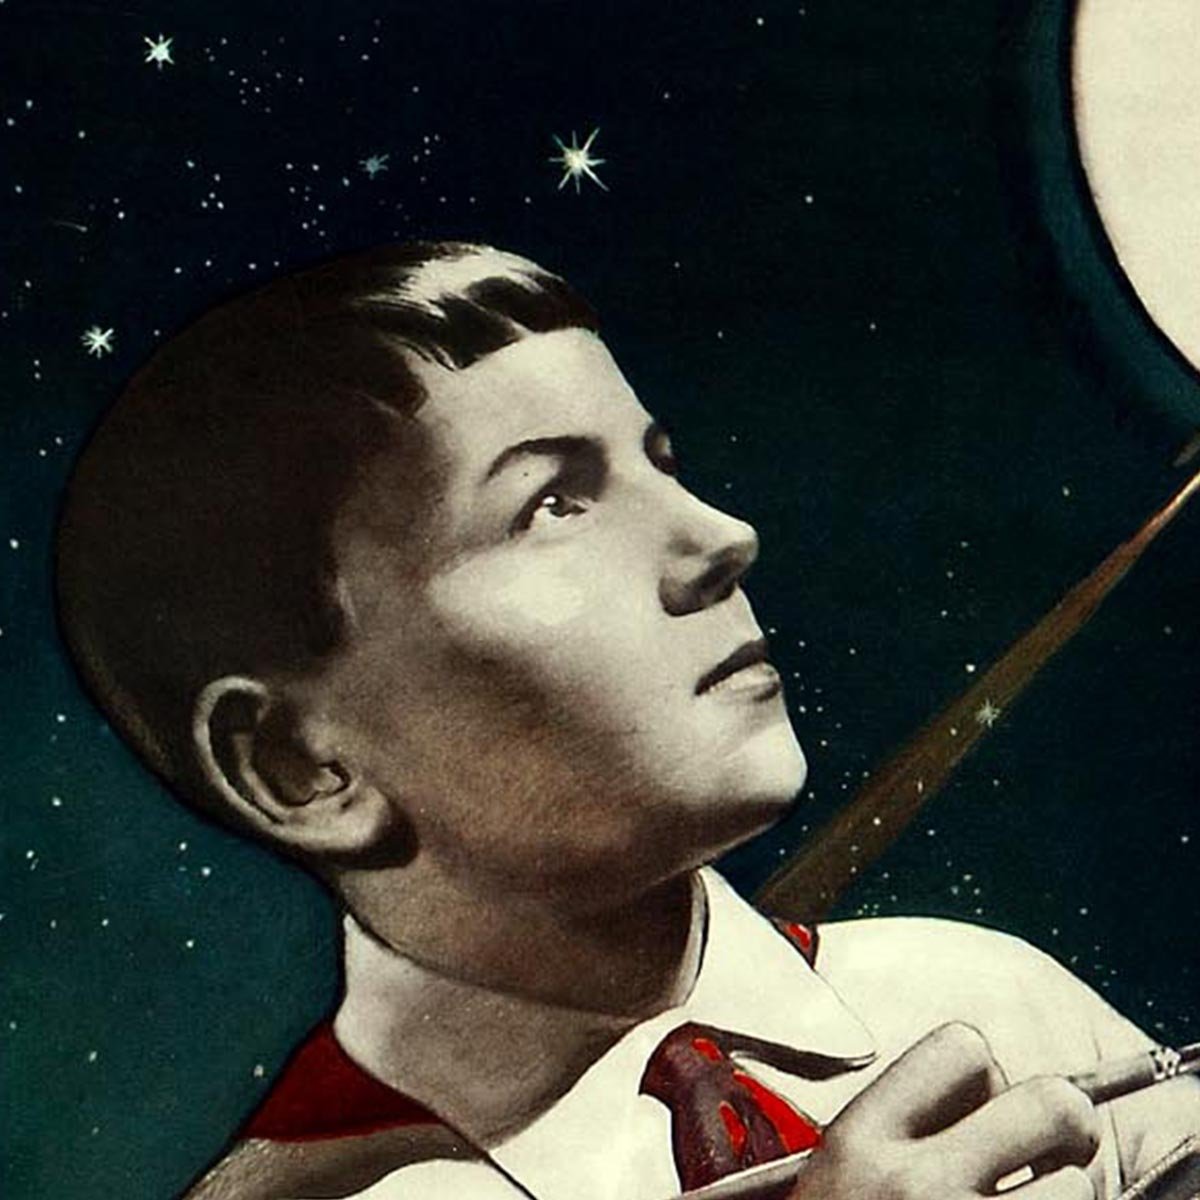 Russian Space Propaganda Poster